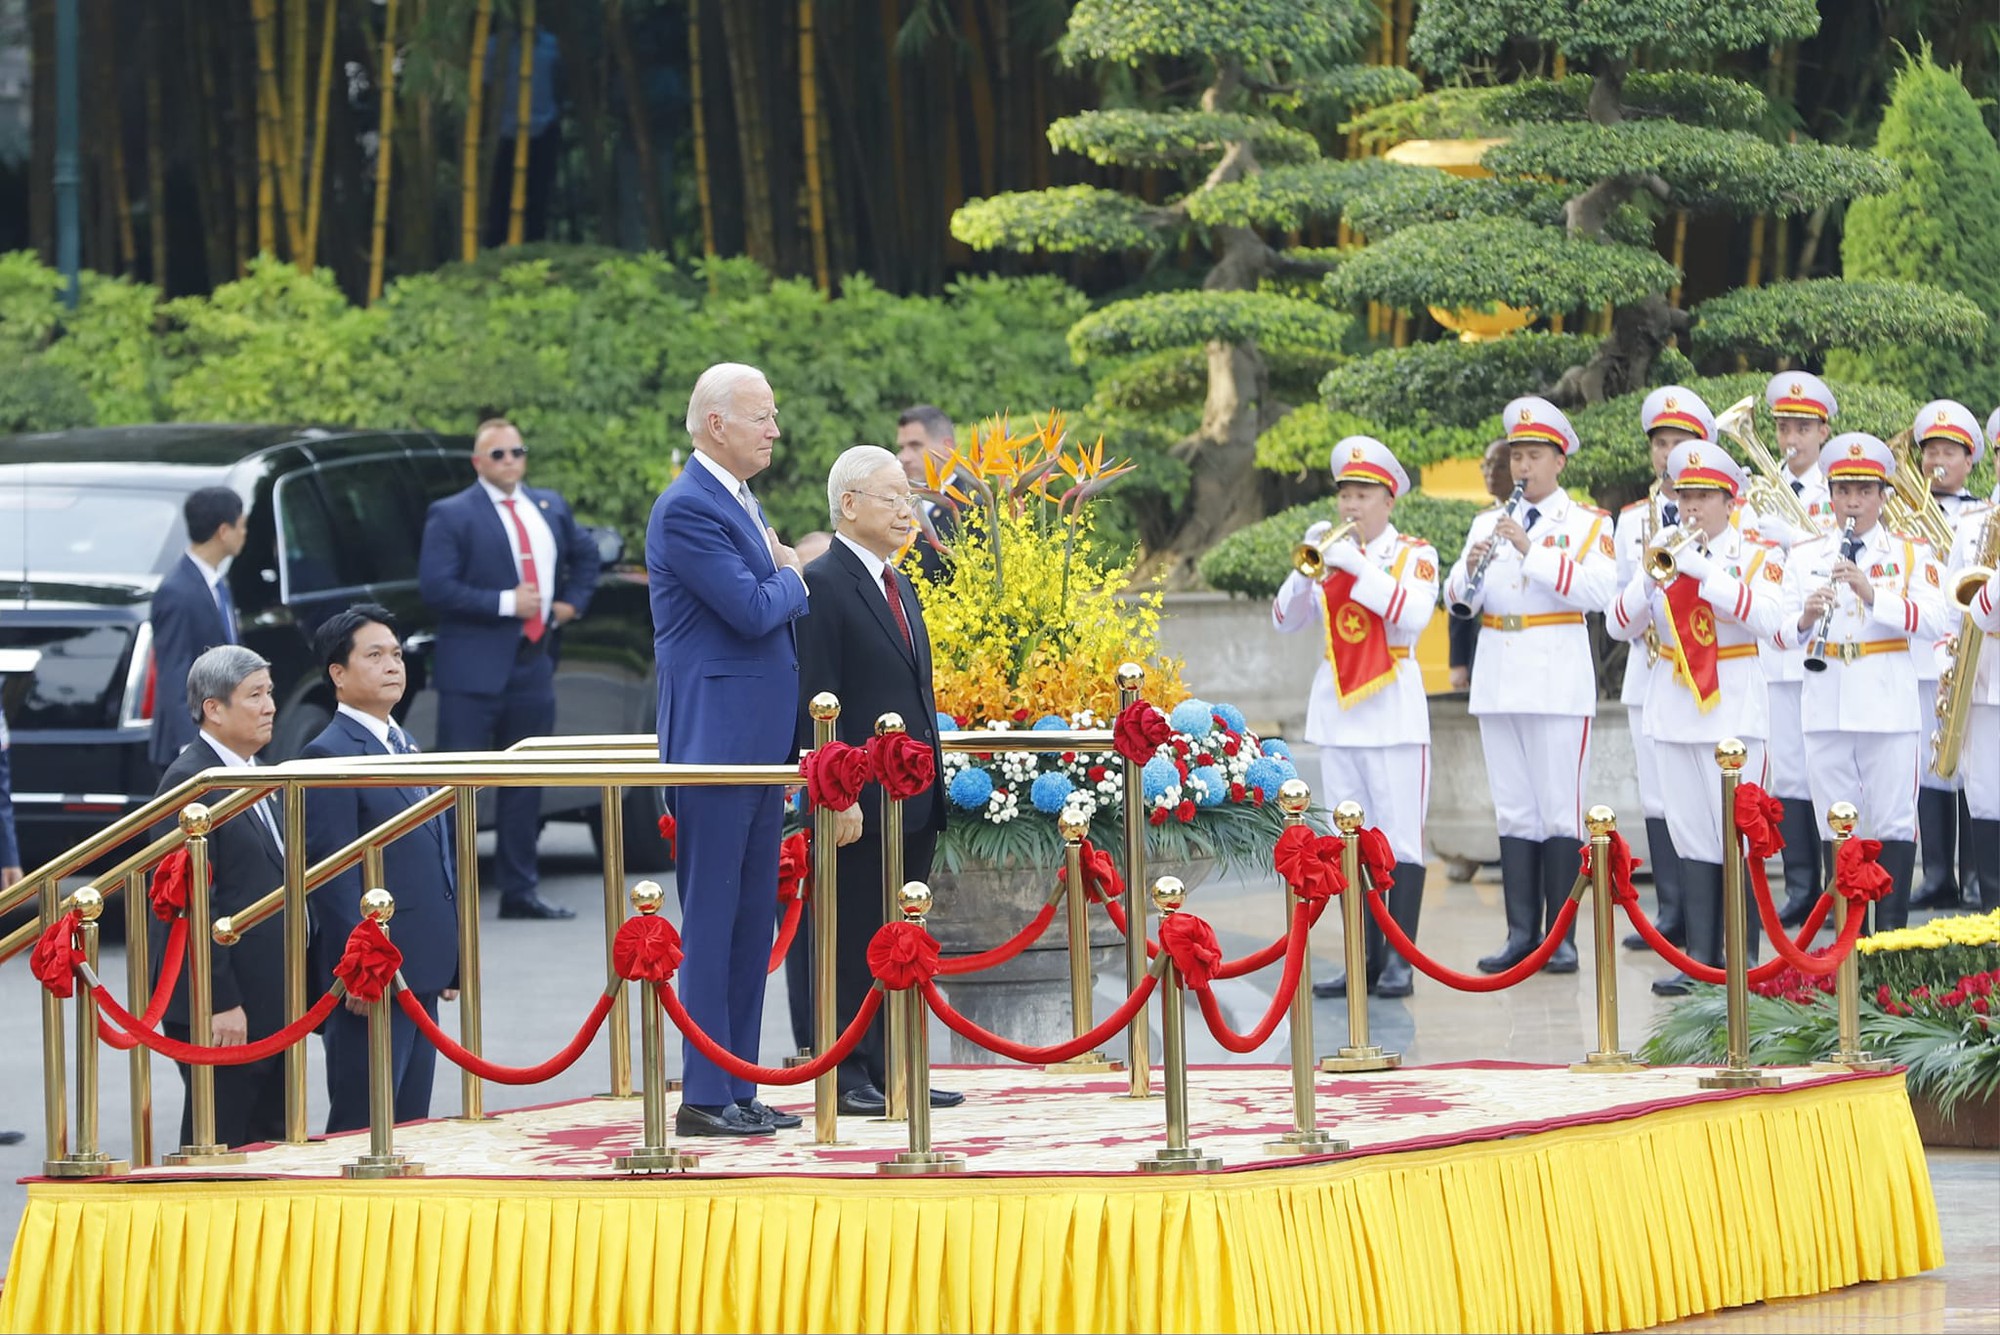 Đại sứ Mỹ: Nhiều khoảnh khắc xúc động trong chuyến thăm Việt Nam của Tổng thống Joe Biden - Ảnh 1.